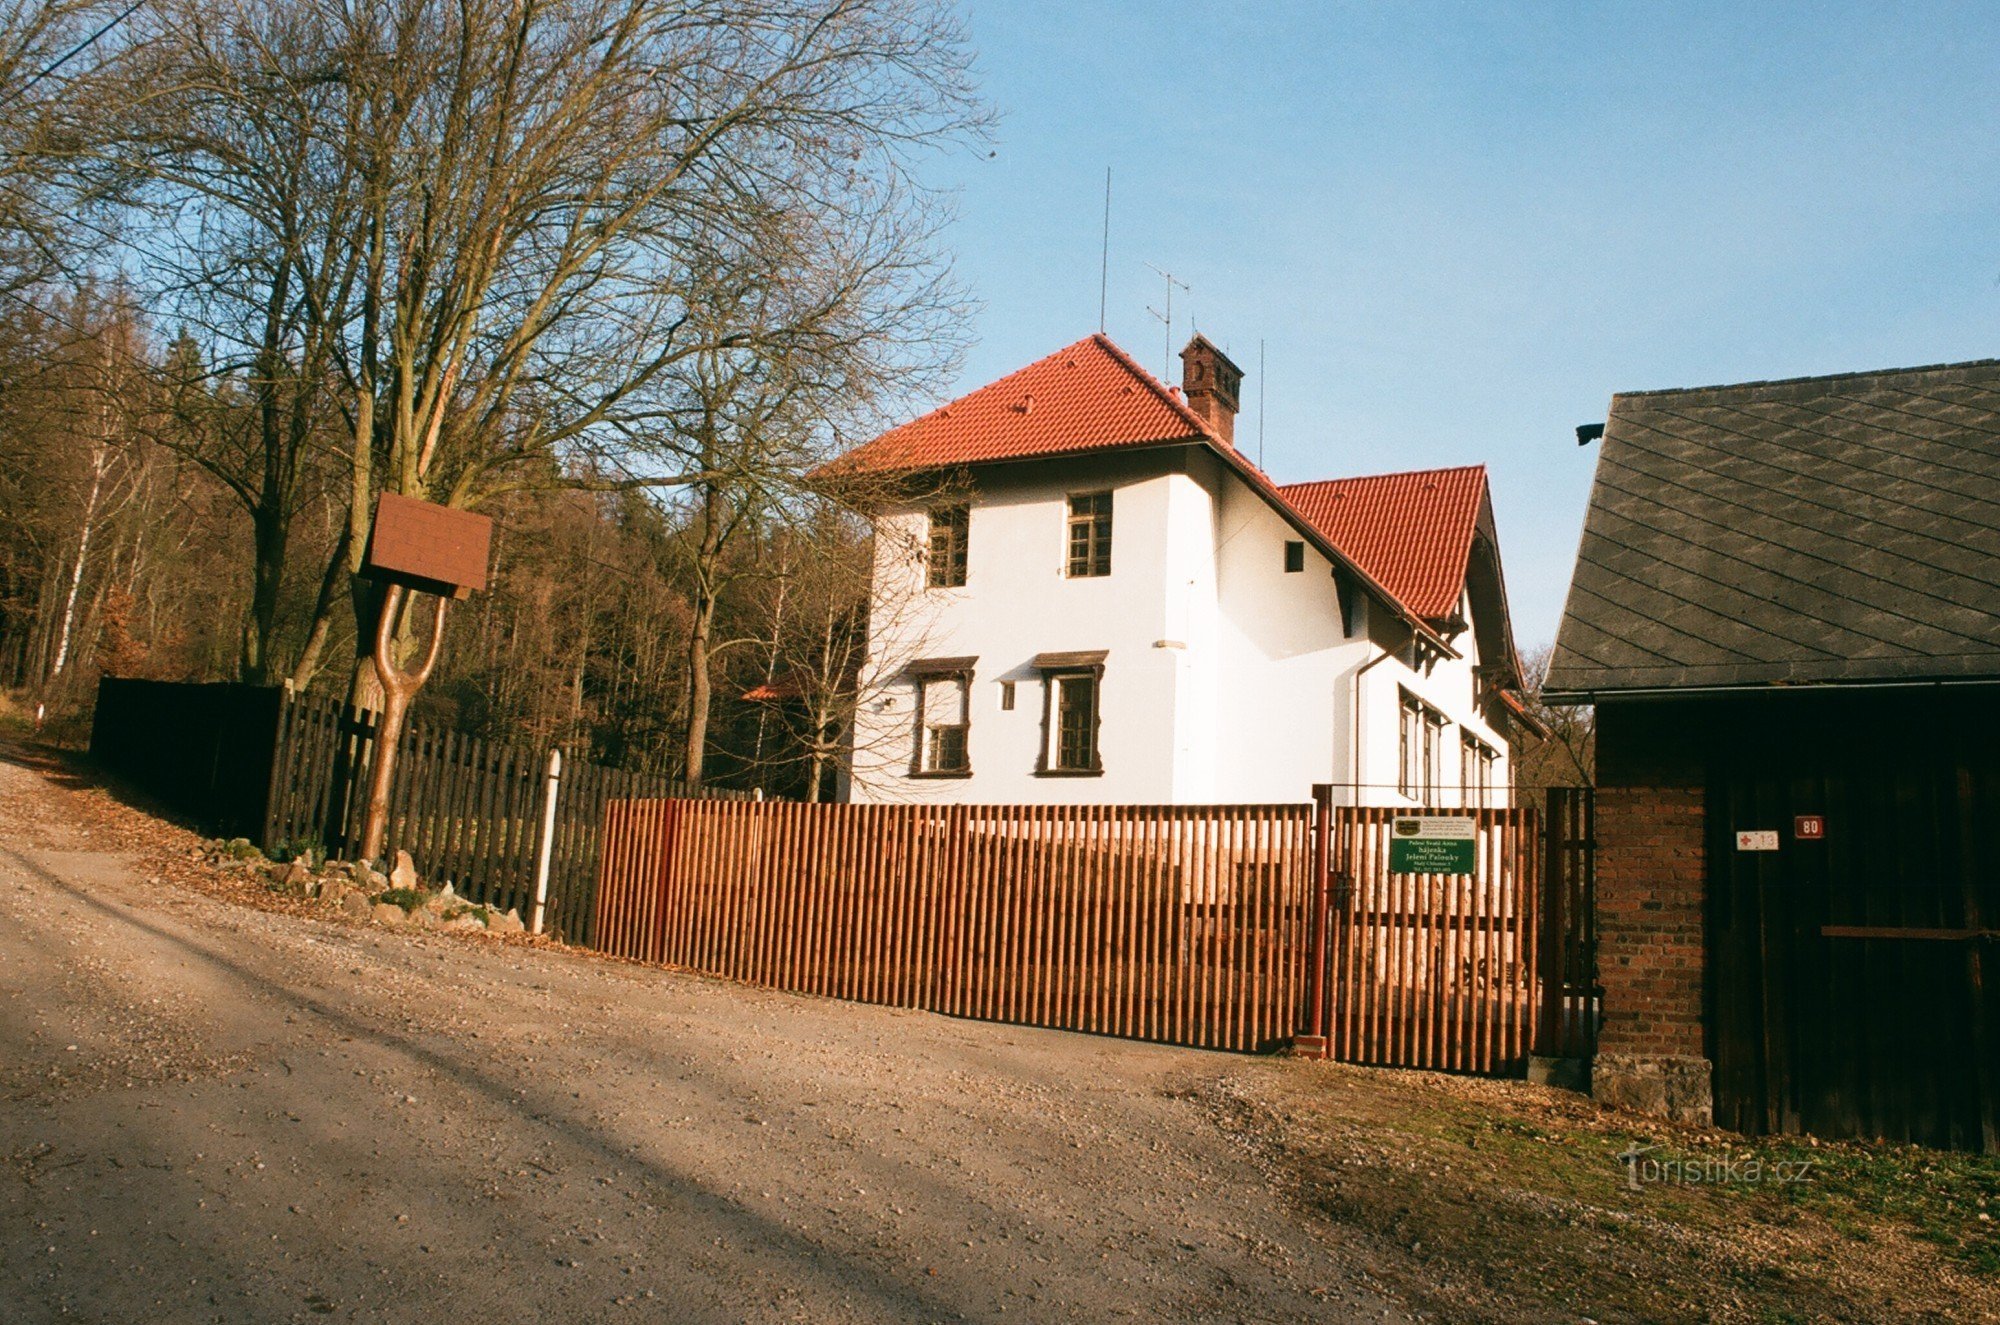 Αποθεματικό θηραμάτων Jelení palouky κοντά στο Hradec